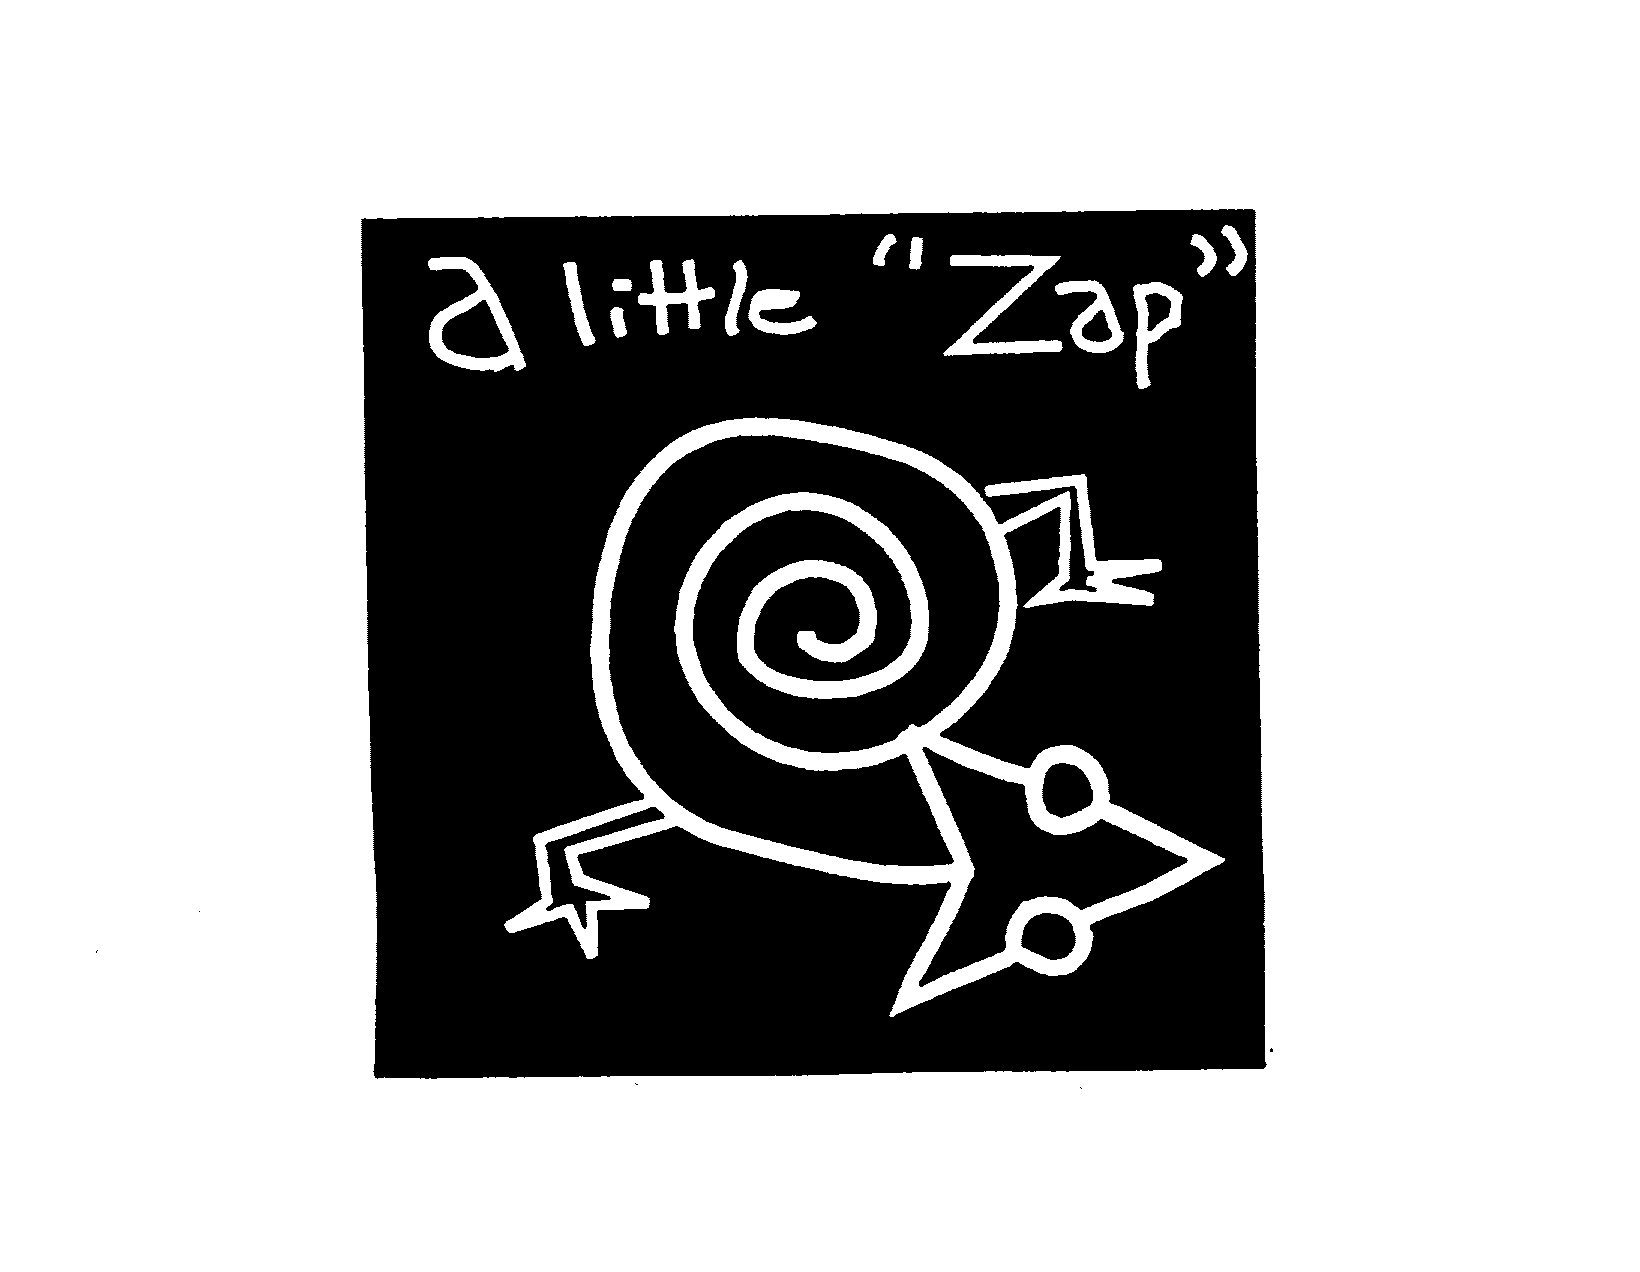  A LITTLE "ZAP"